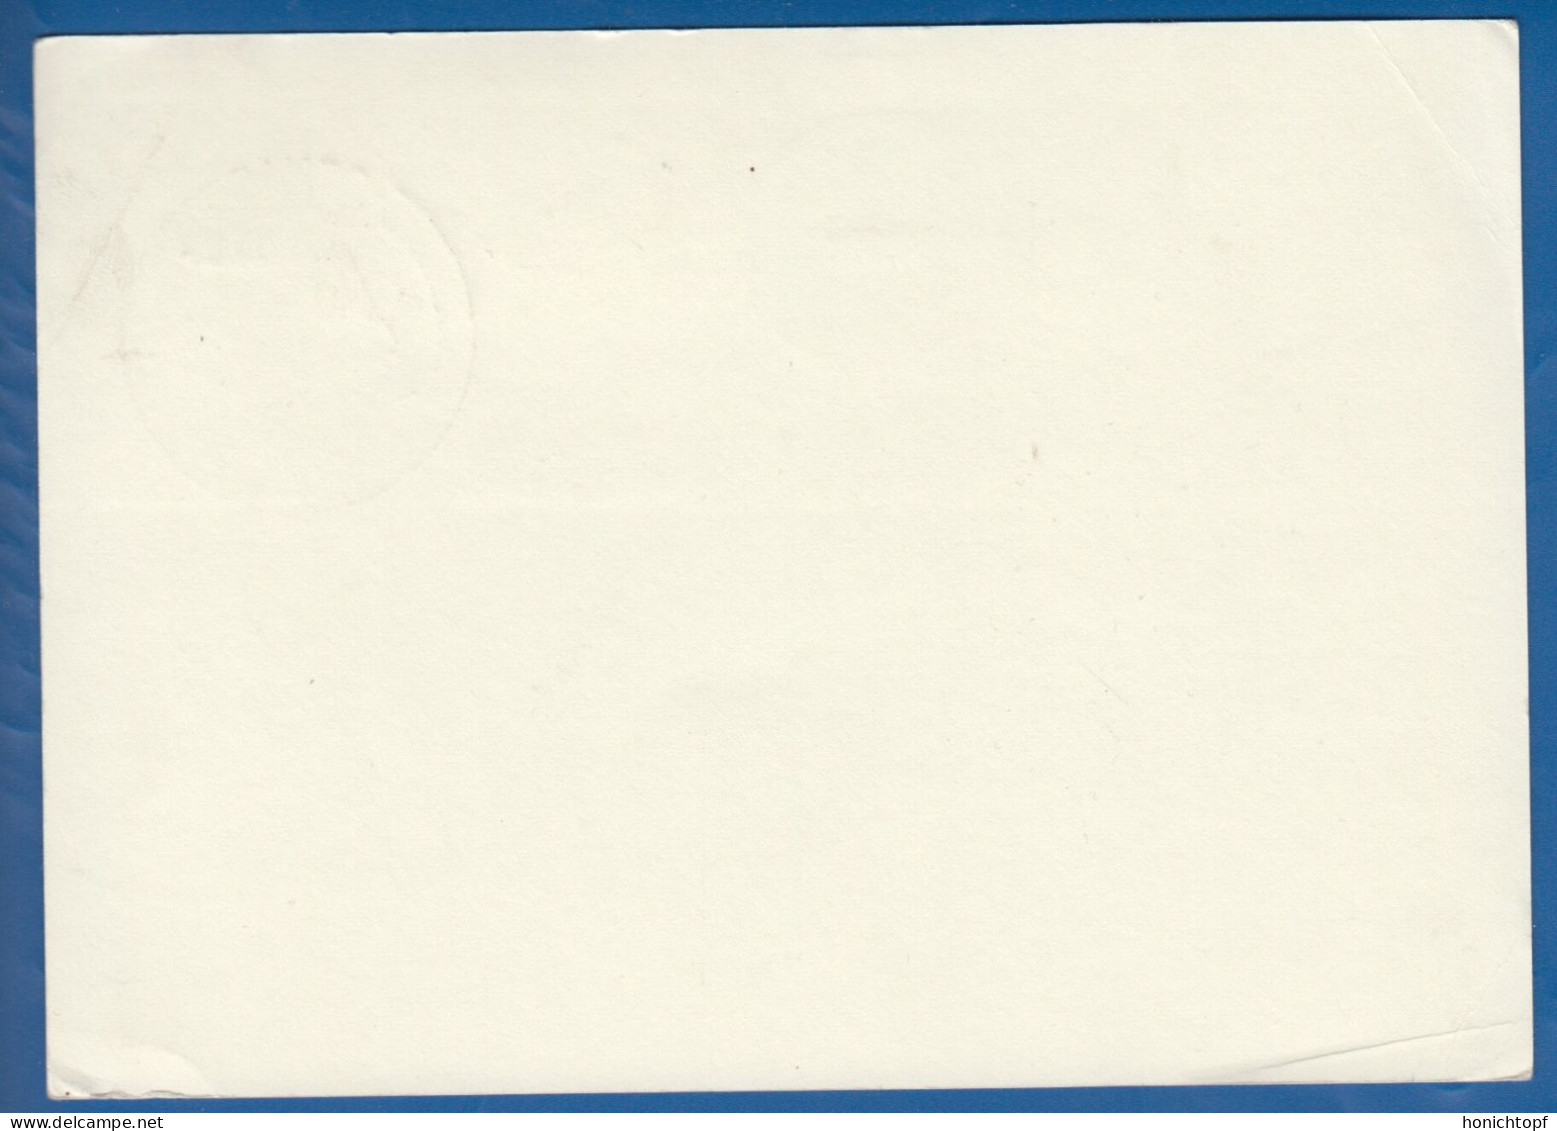 Deutschland; BRD; Postkarte; 60+50 Pf Schloss Neuschwanstein Und Mi.-Nr. 1035 Rathaus Osnabrück; 1980 - Cartes Postales - Oblitérées